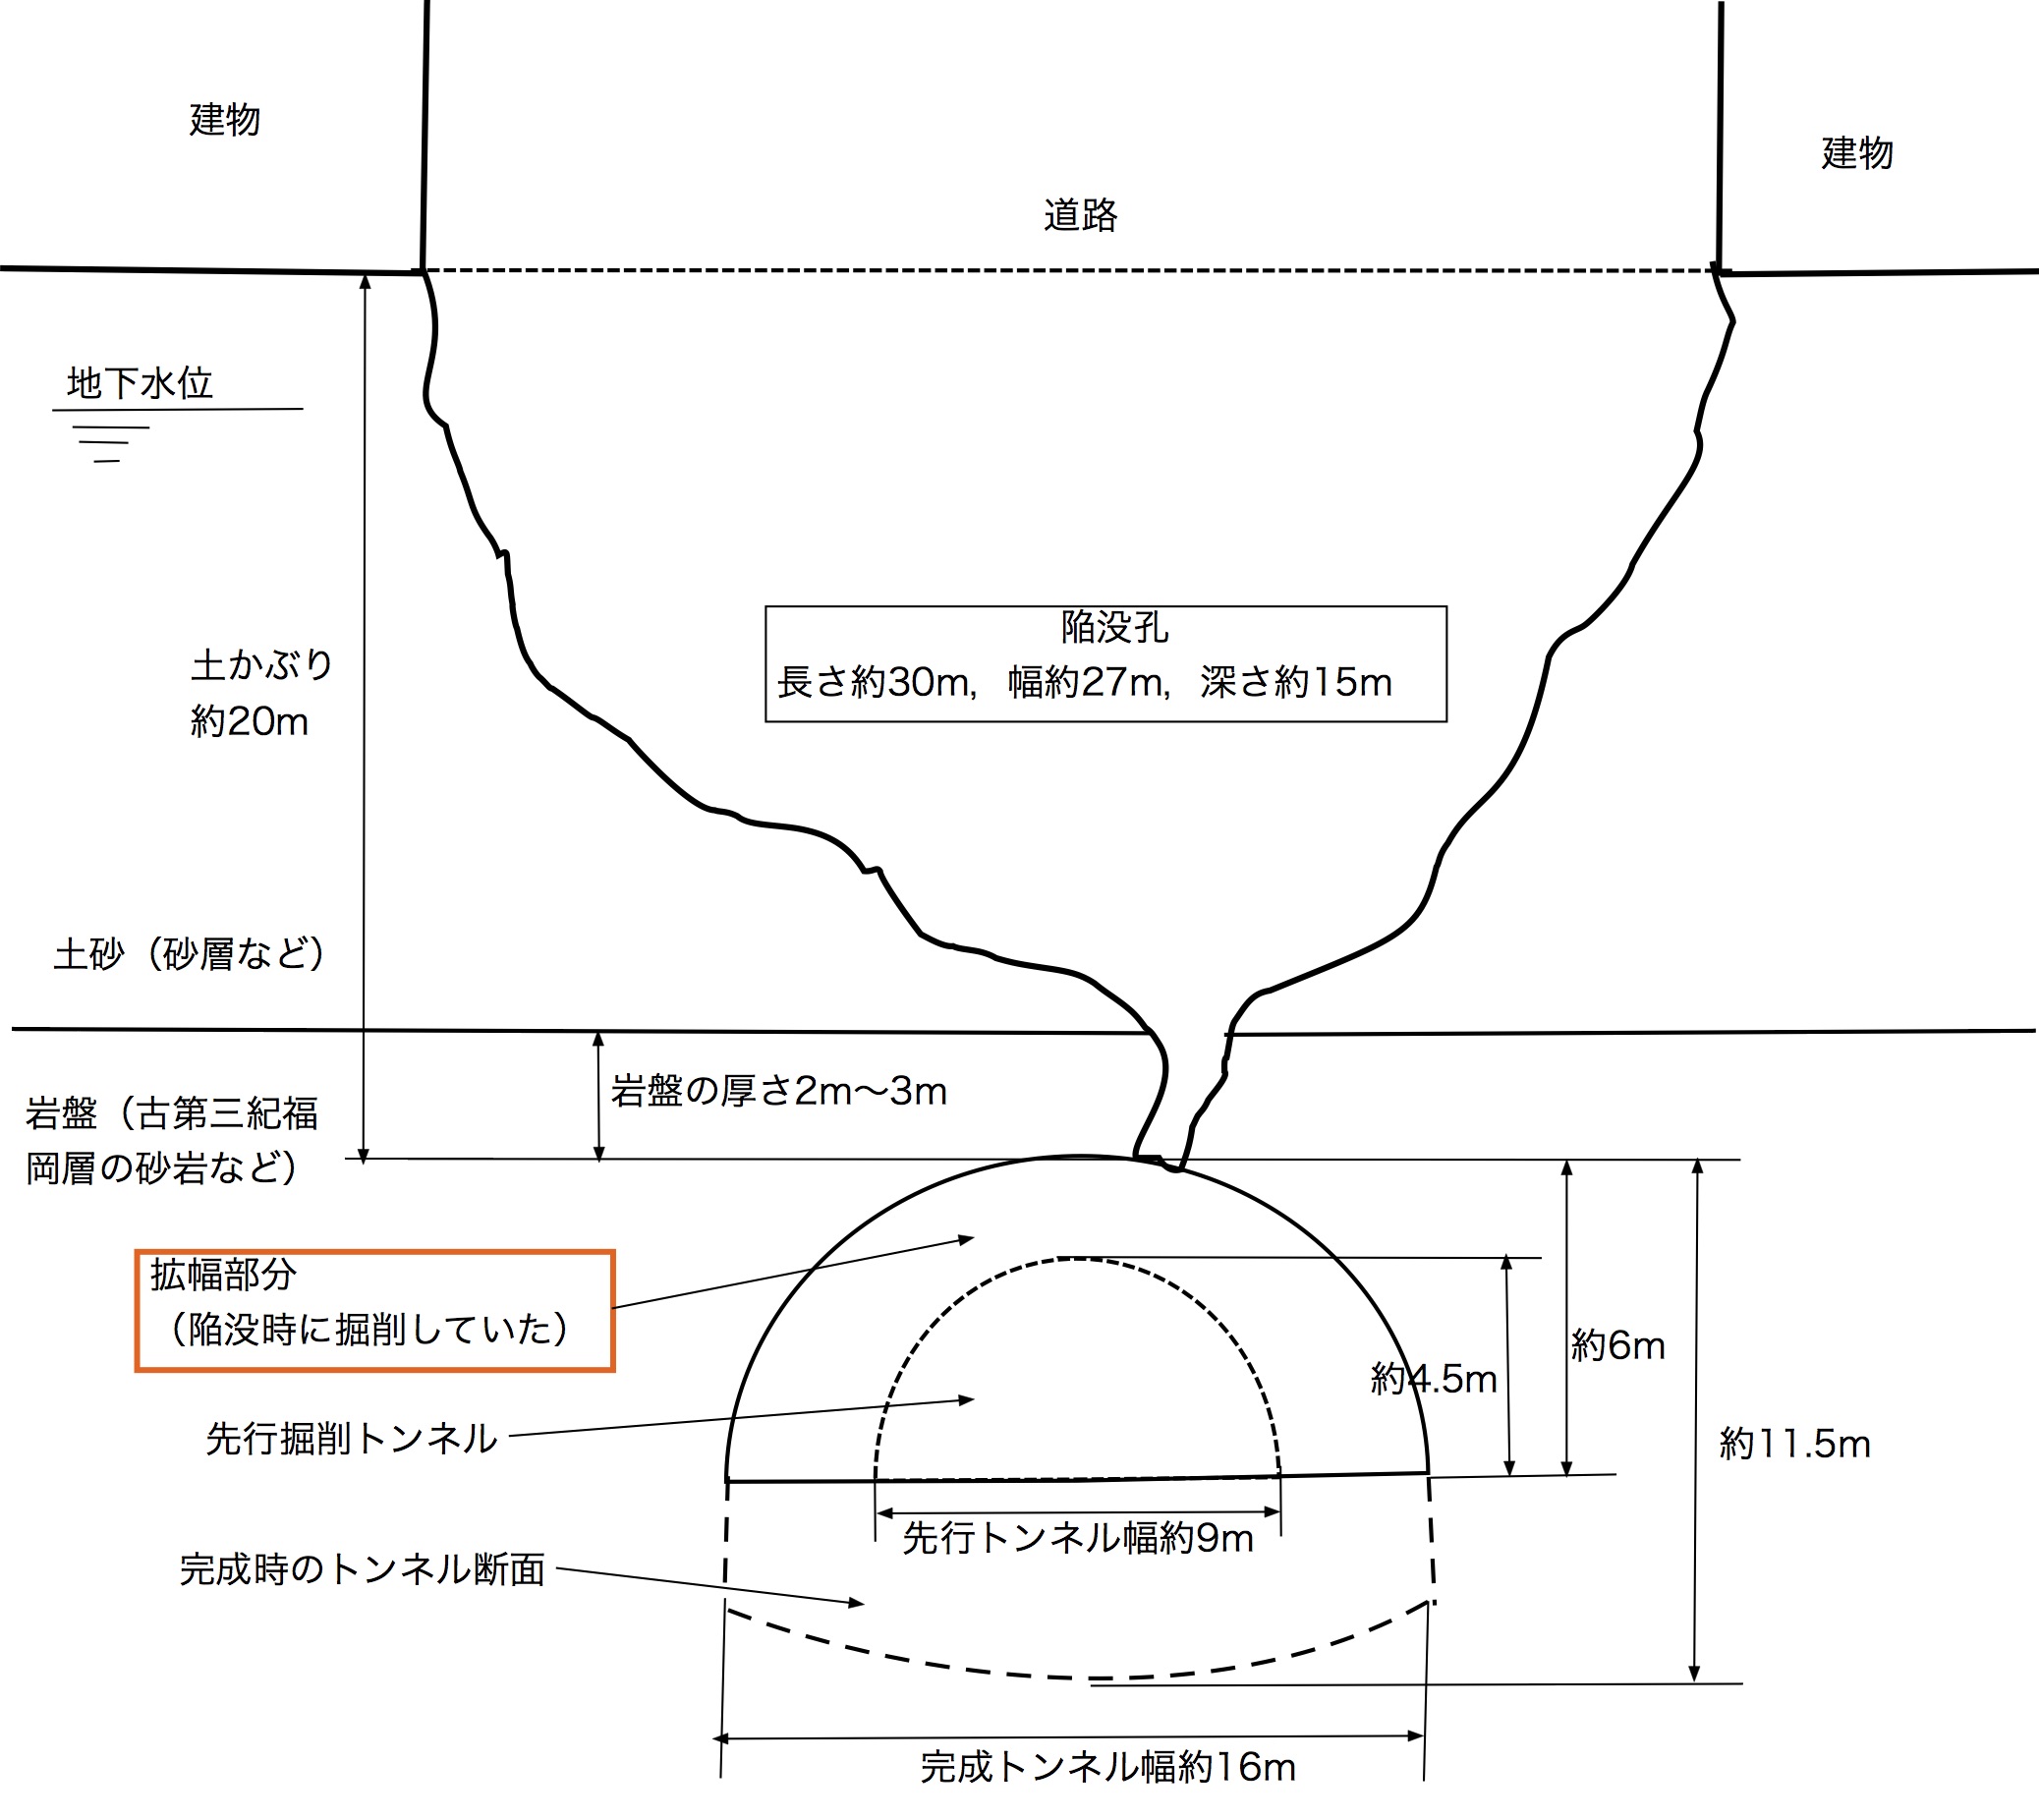 図1　福岡地下鉄陥没概略図.jpg